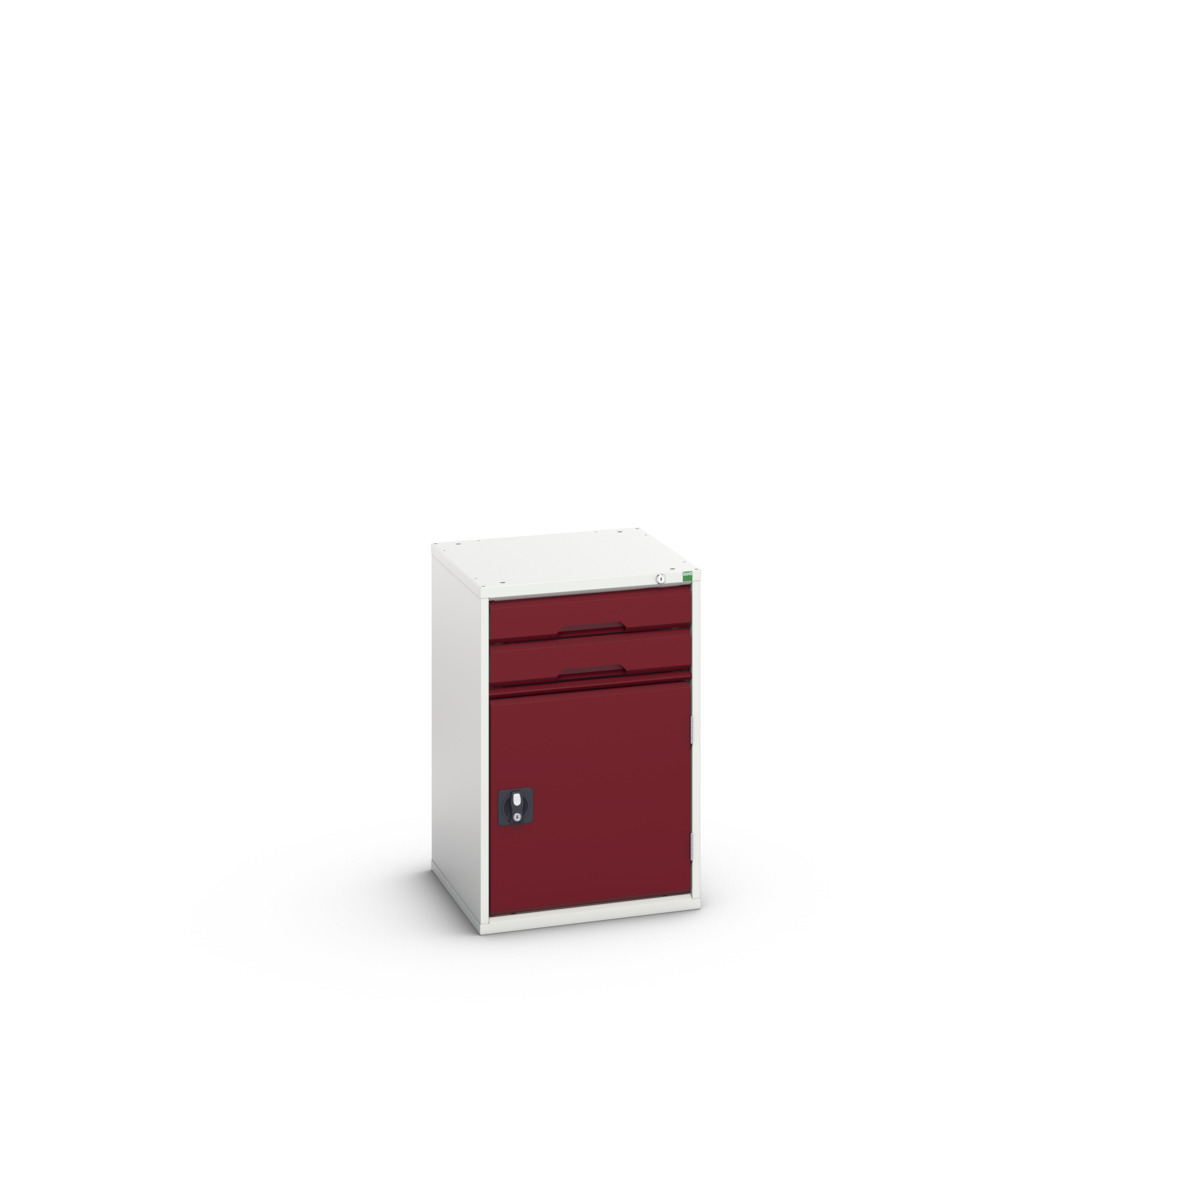 16925316.24 - verso drawer-door cabinet